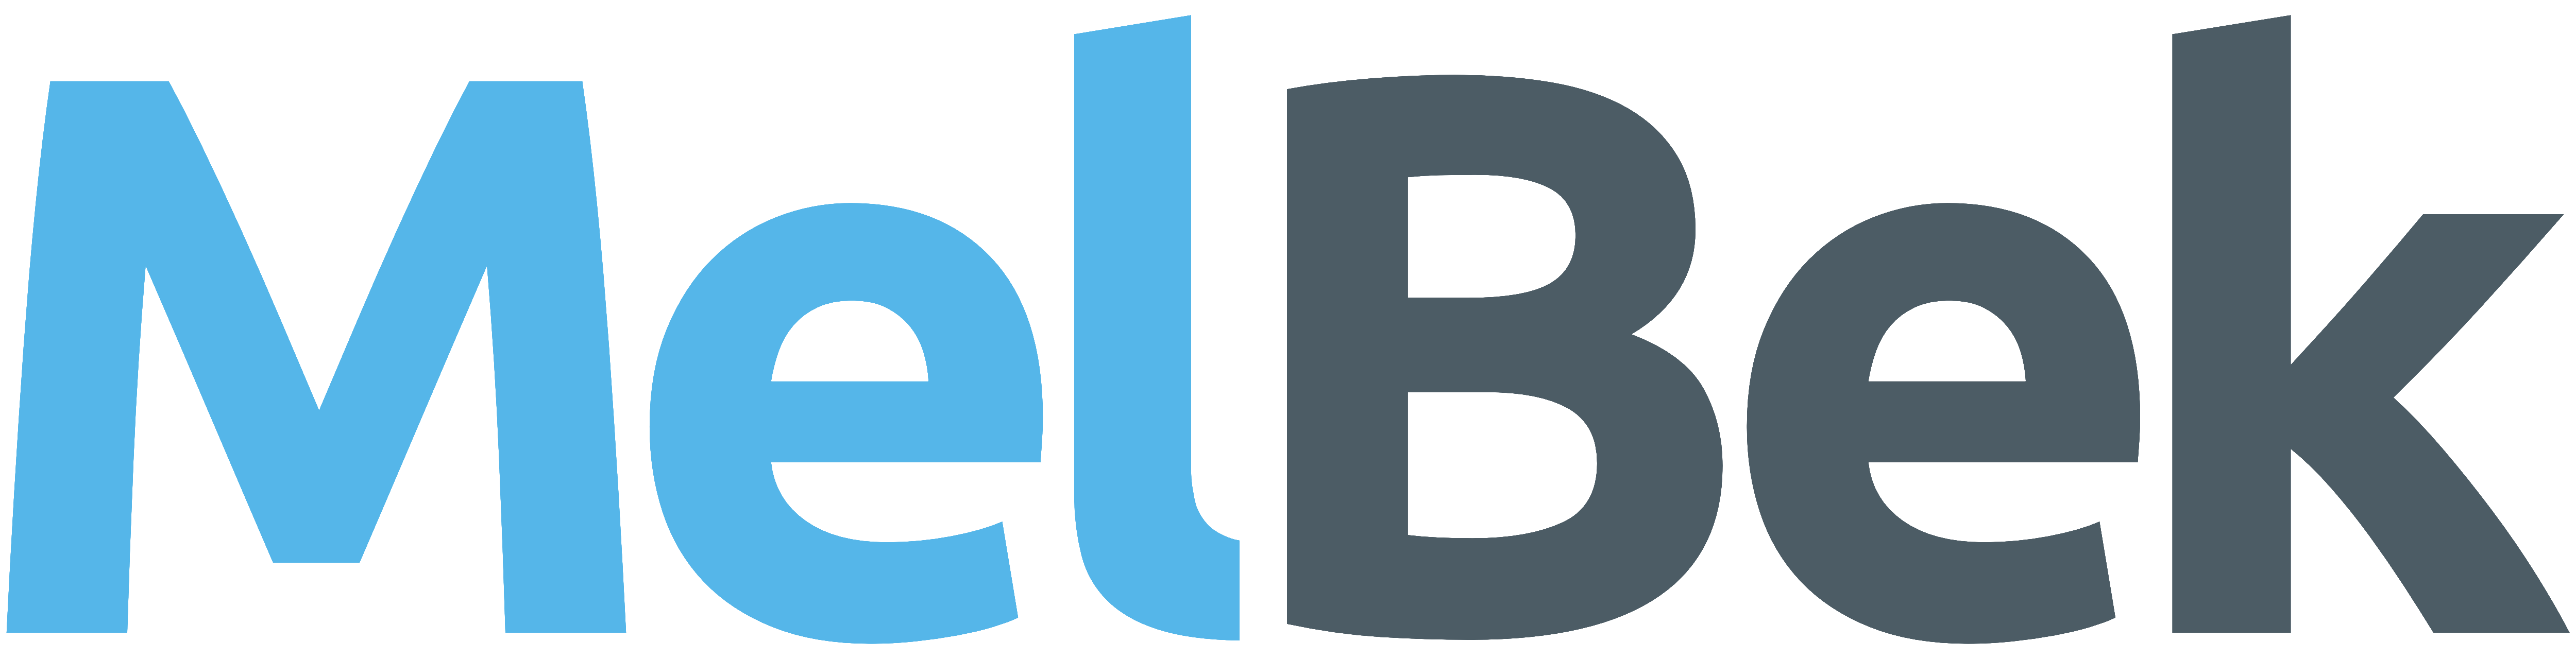 MELBEK logo